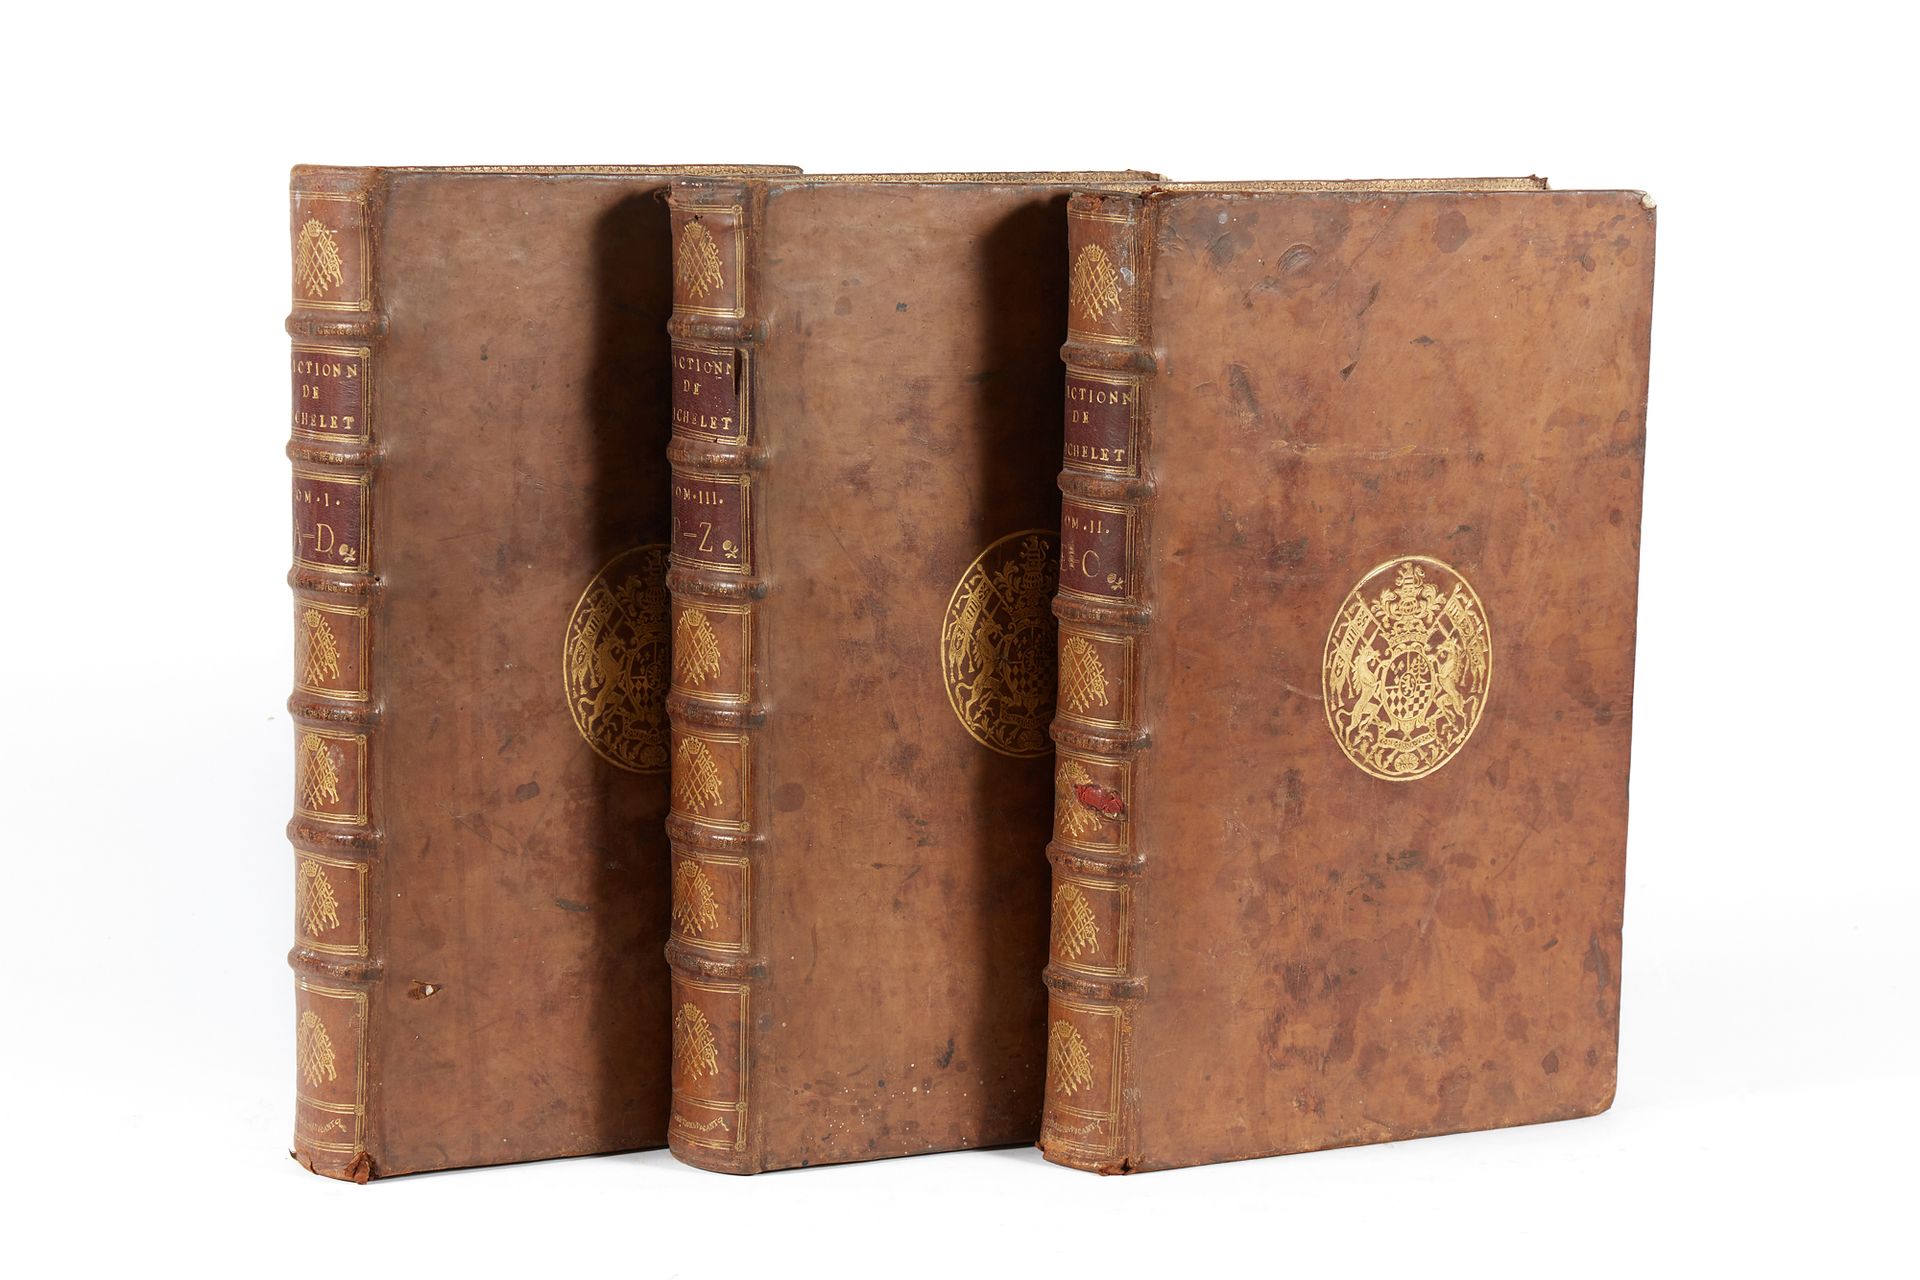 RICHELET, Pierre. 法国语言词典，古代和现代。巴黎，雅克-埃斯蒂安，1728年。3卷本。全现代小牛皮，木板上有镀金的臂章，书脊上有纹章的铁圈装饰&hellip;